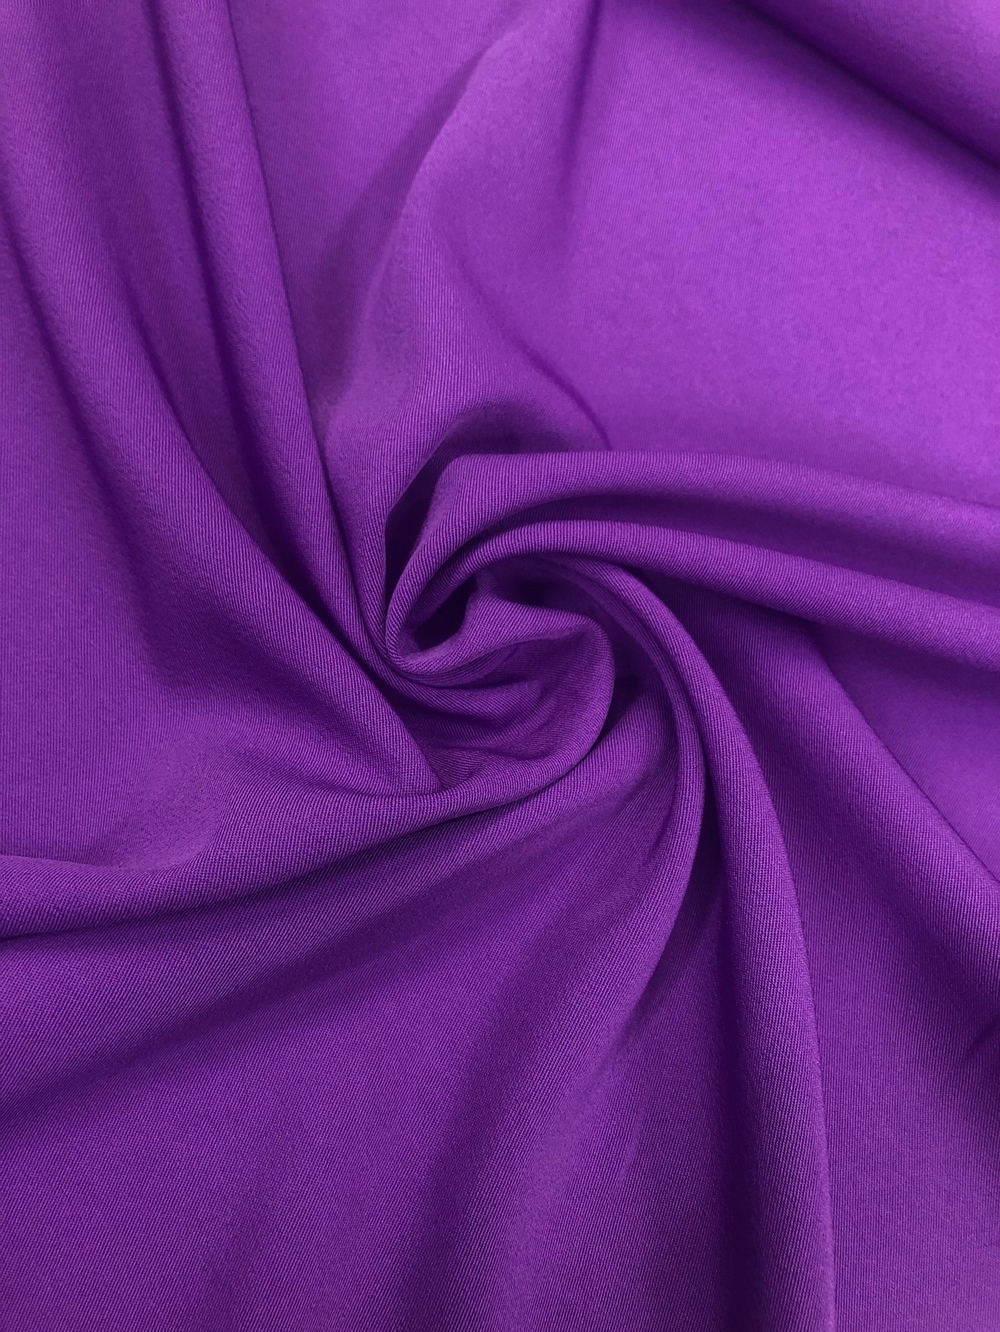 Ткань Пикачо фиолетовый арт. 327815